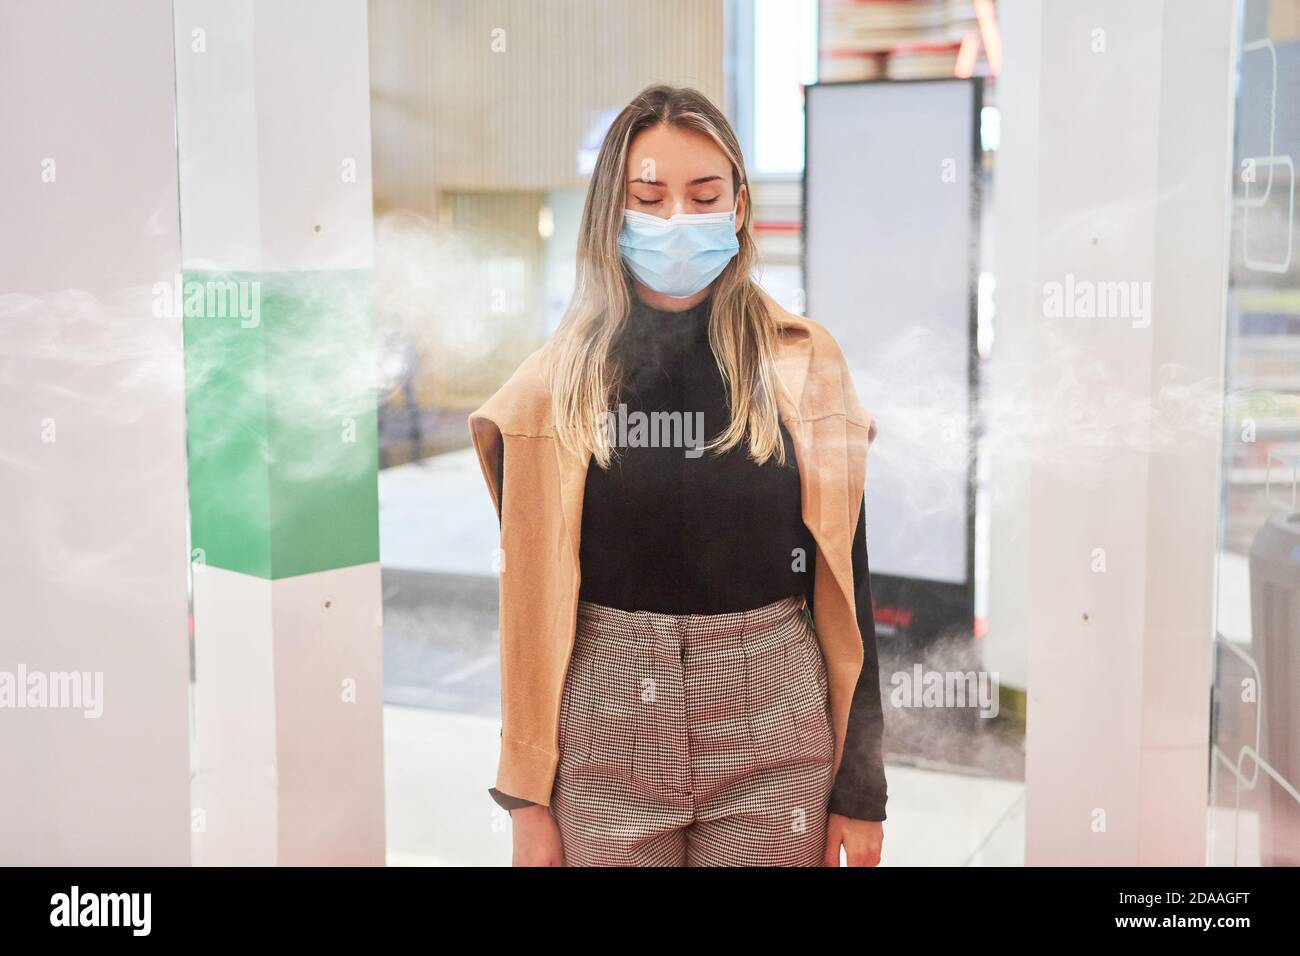 Client ayant un masque facial lors de la désinfection Covid-19 à l'entrée au centre commercial Banque D'Images